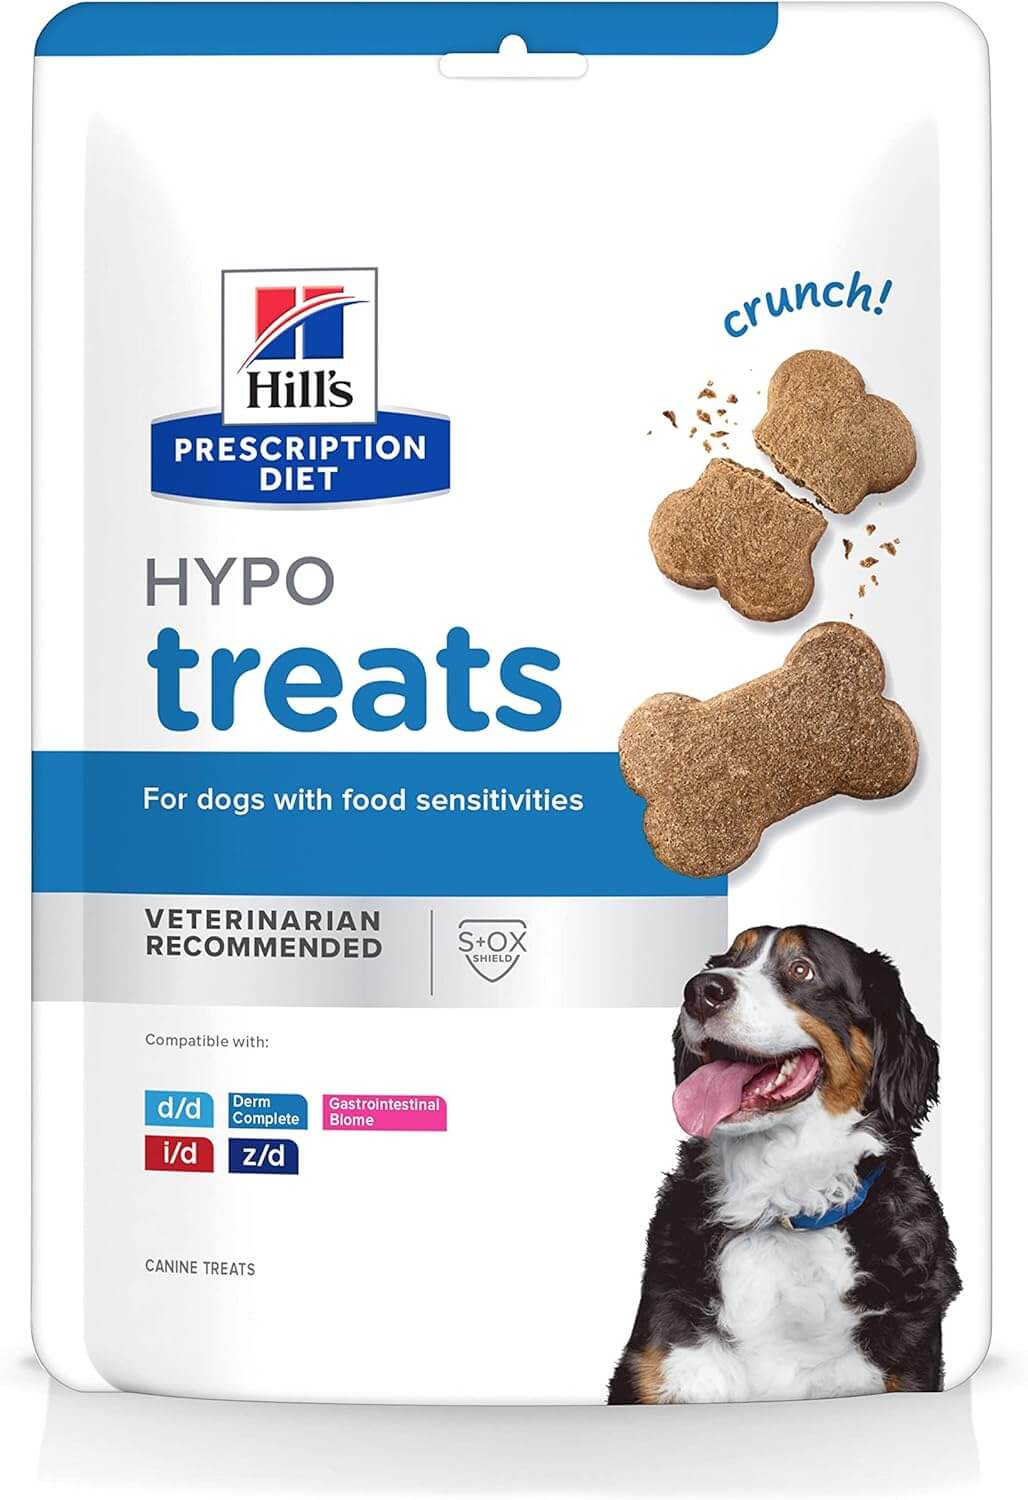 Hill's Prescription Diet Hypo treats